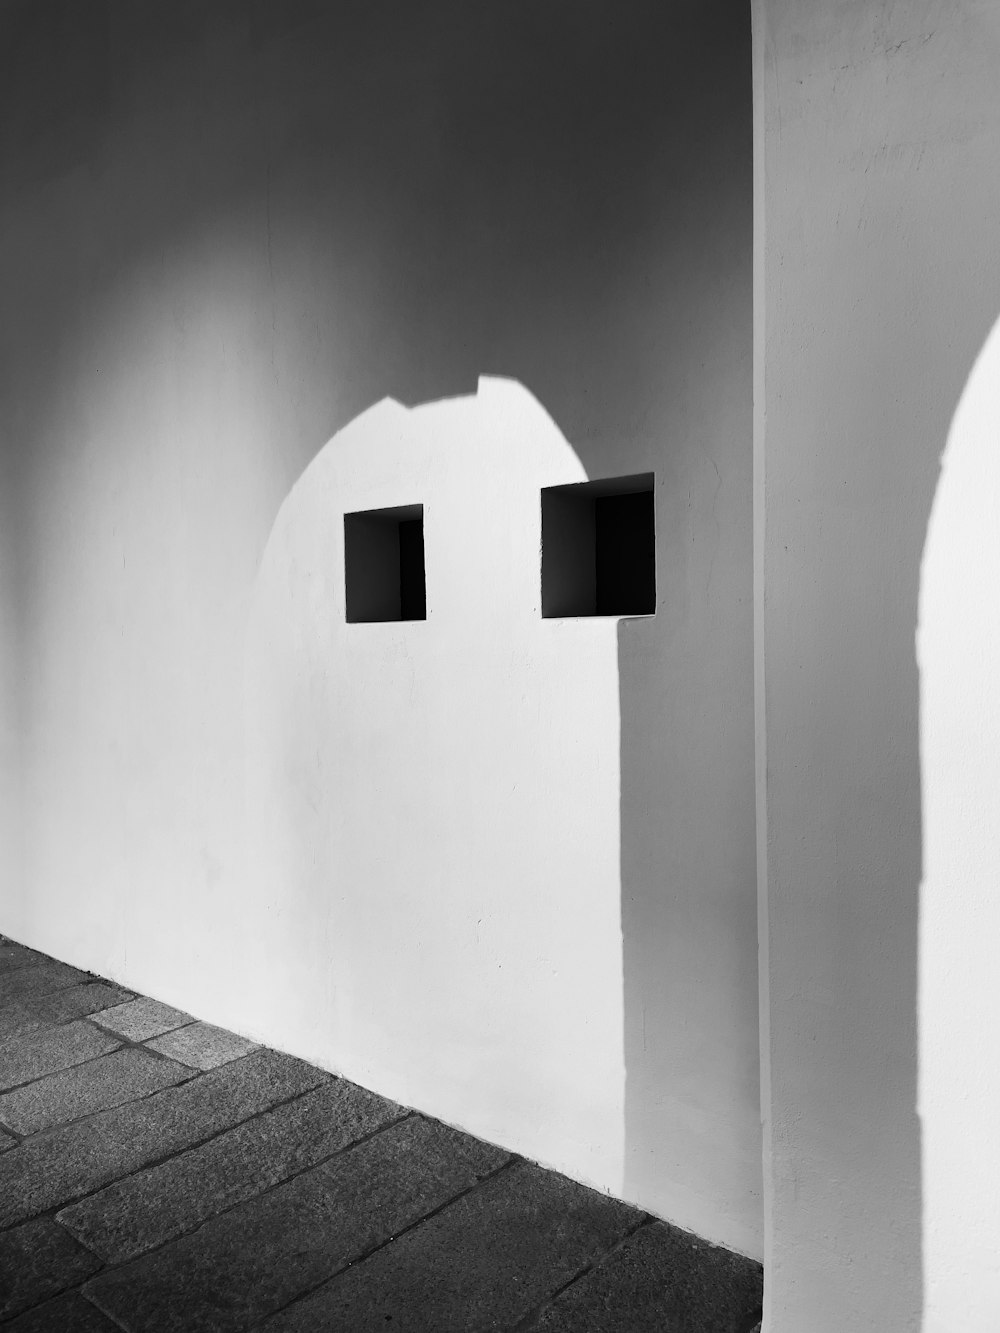 두 개의 사각형 창의 흑백 사진